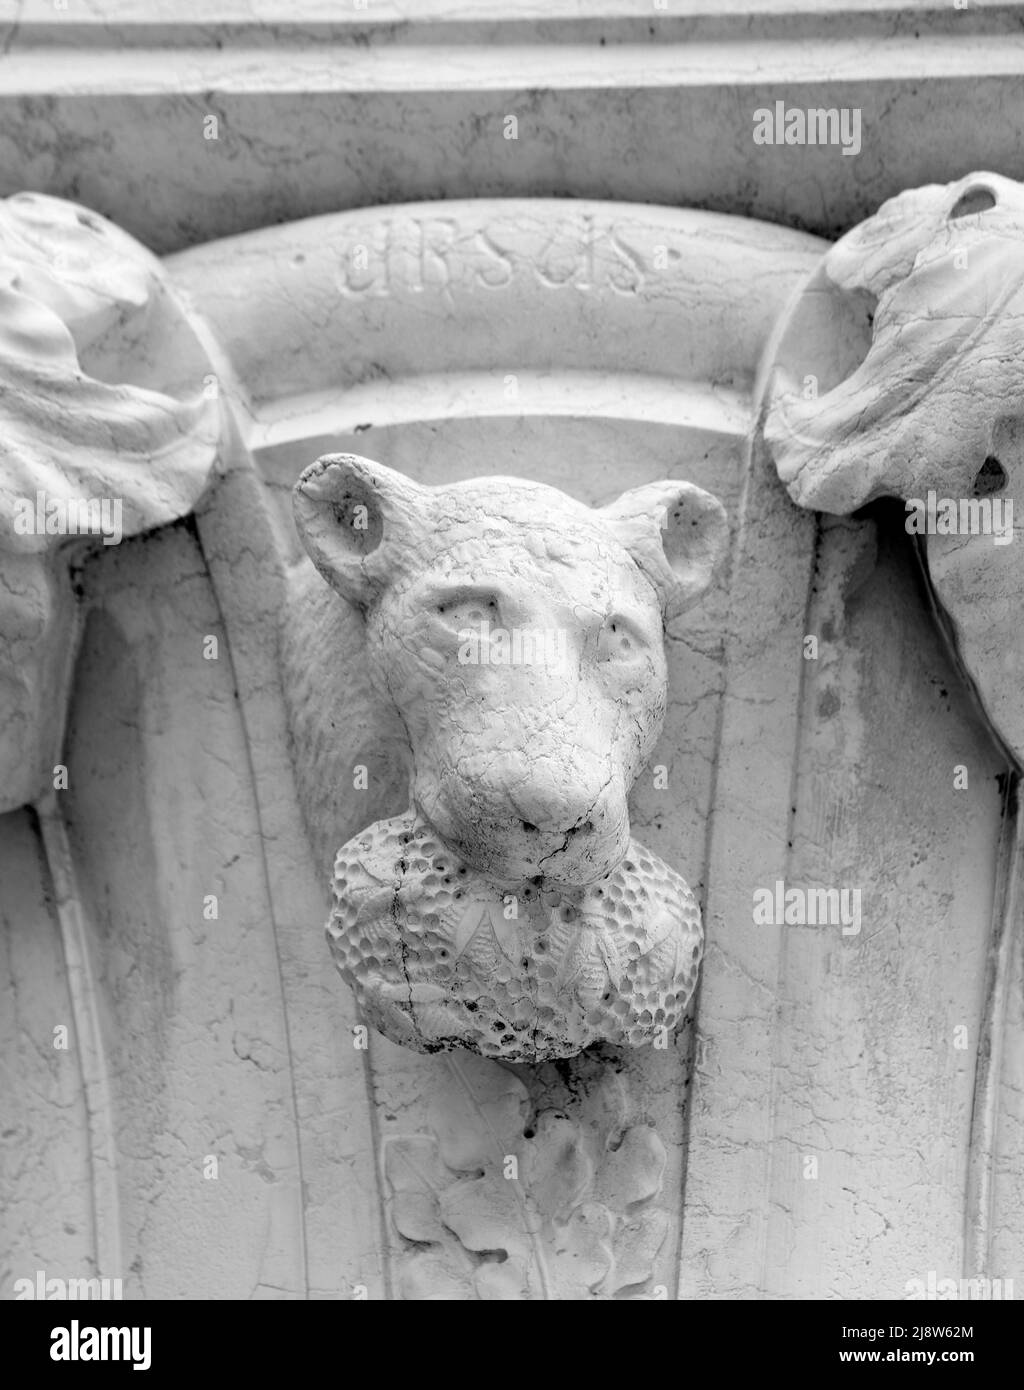 Venecia, VE, Italia - 18 de mayo de 2020: Hocico de oso con cebollino y panal en la boca en la columna del Palacio Ducal. Este animal pertenece a La A. Foto de stock